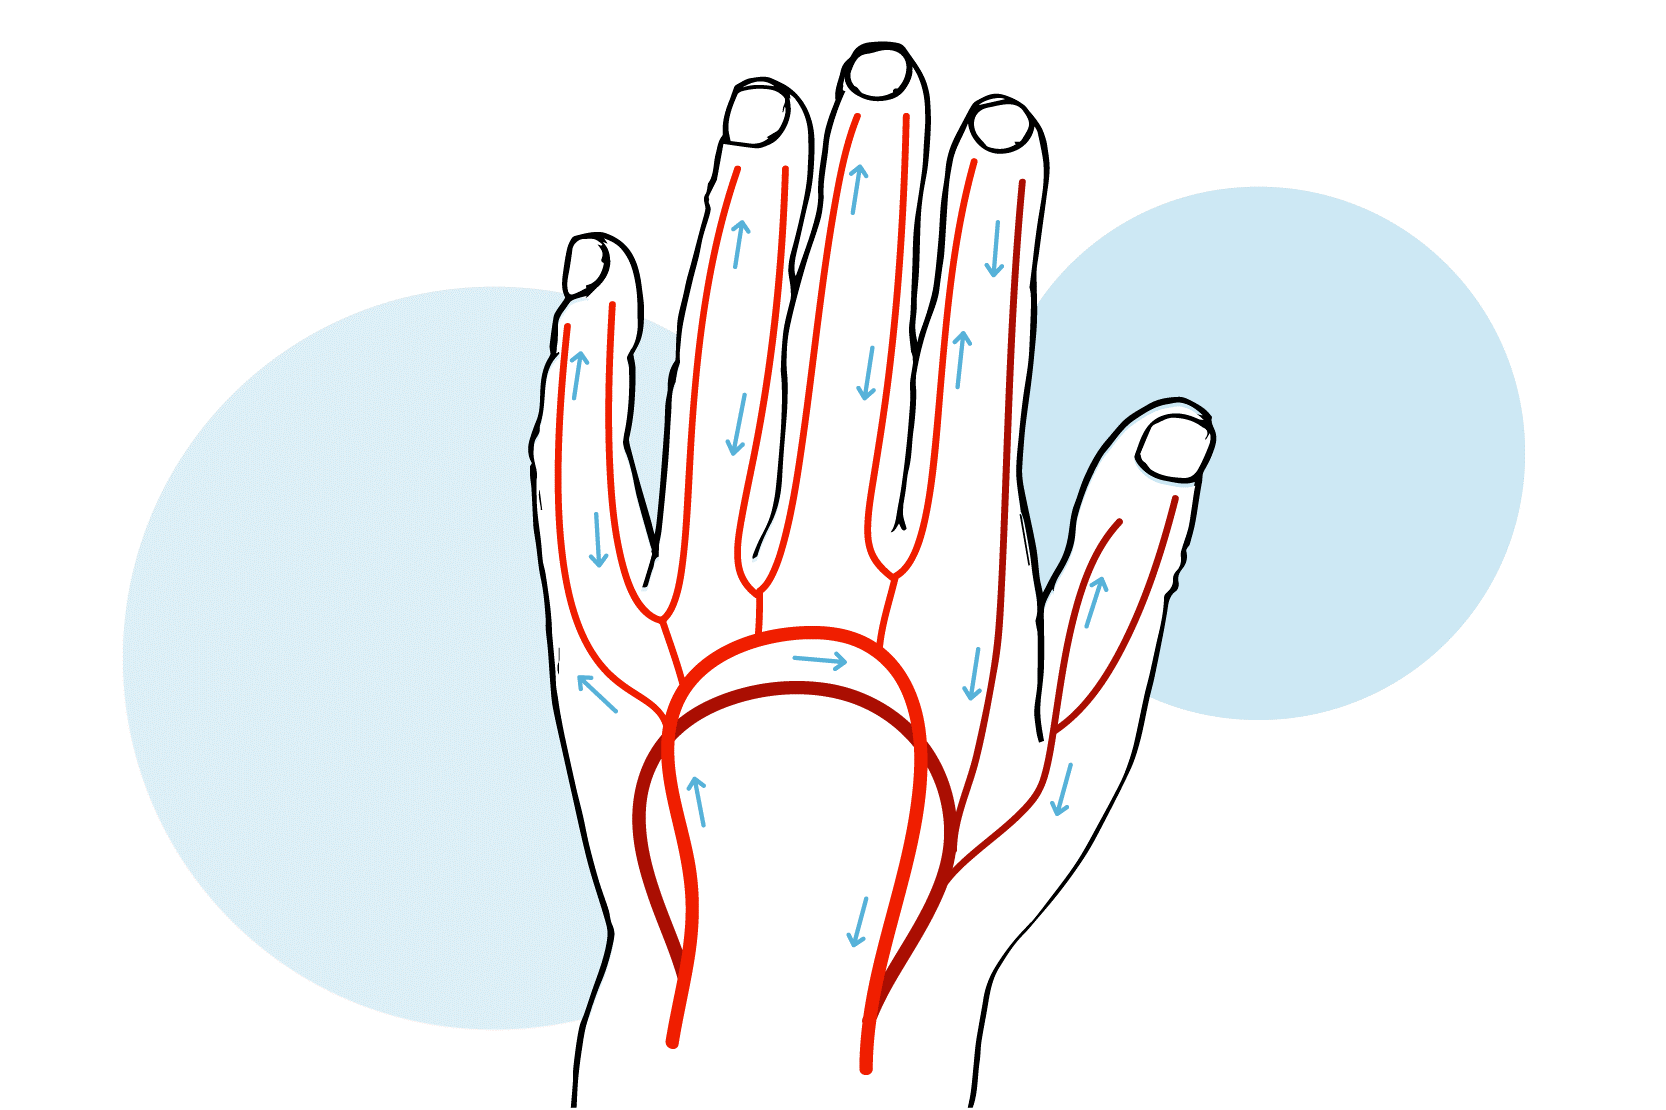 Genomskärning av en hand med blodkärl och pilar för blodcirkulation inritat. Illustration.